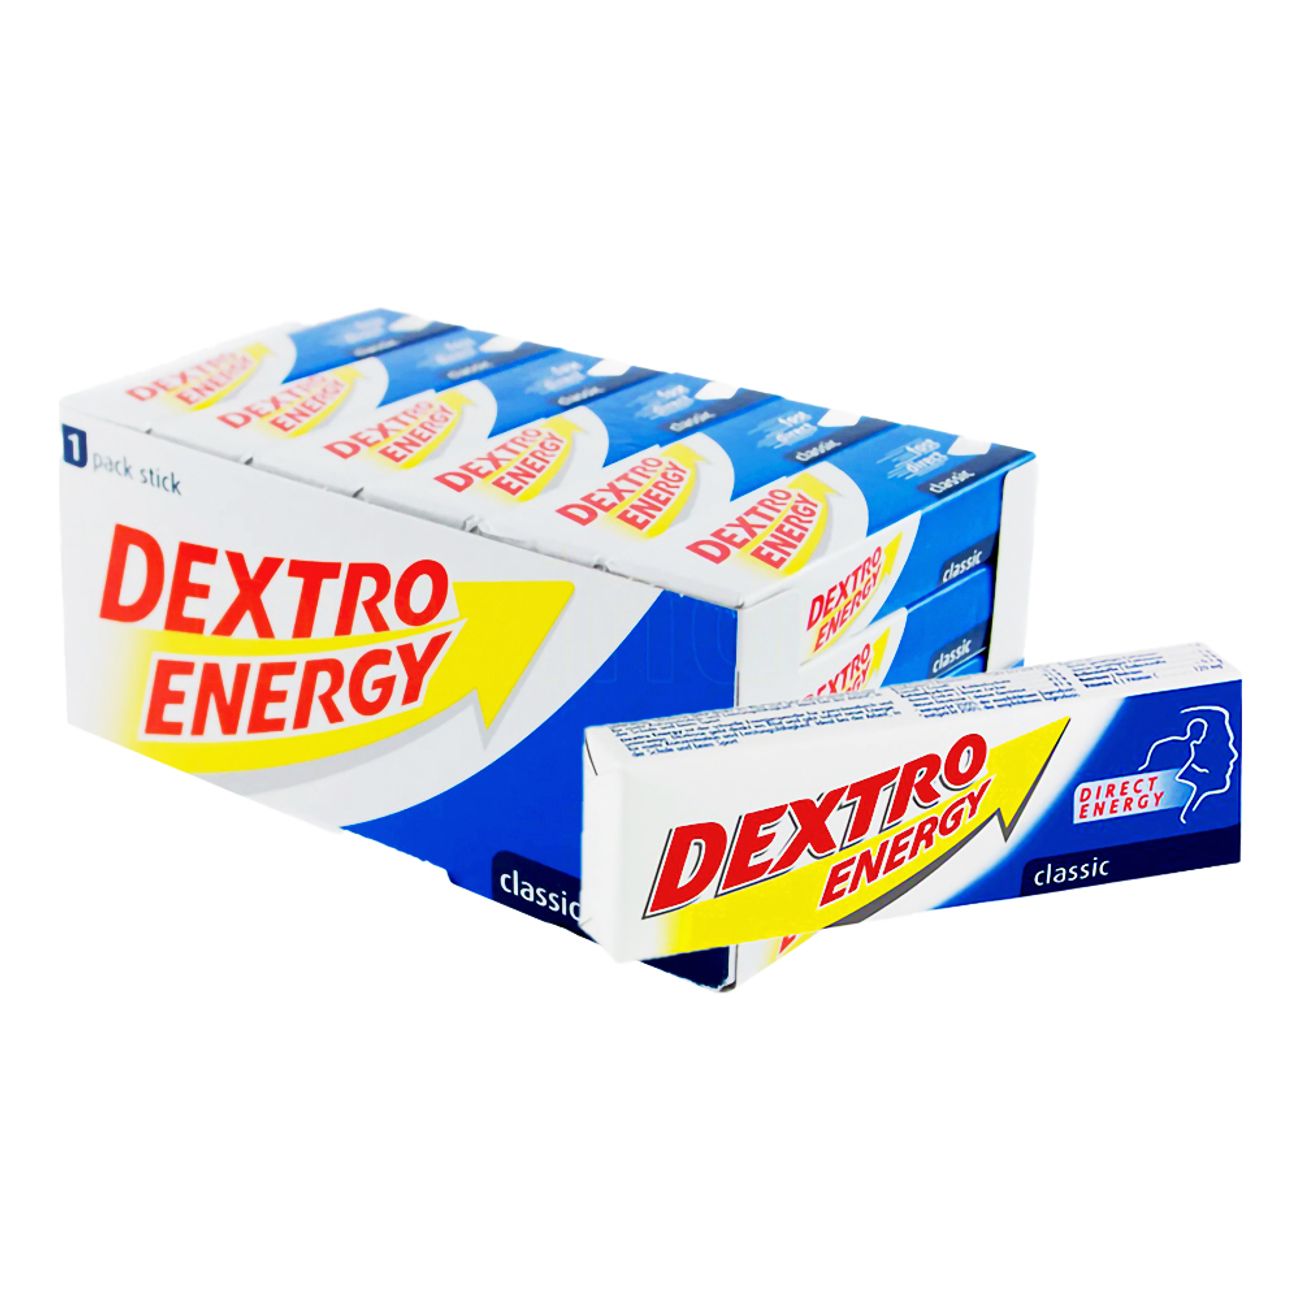 dextro-energy-classic-16197-4